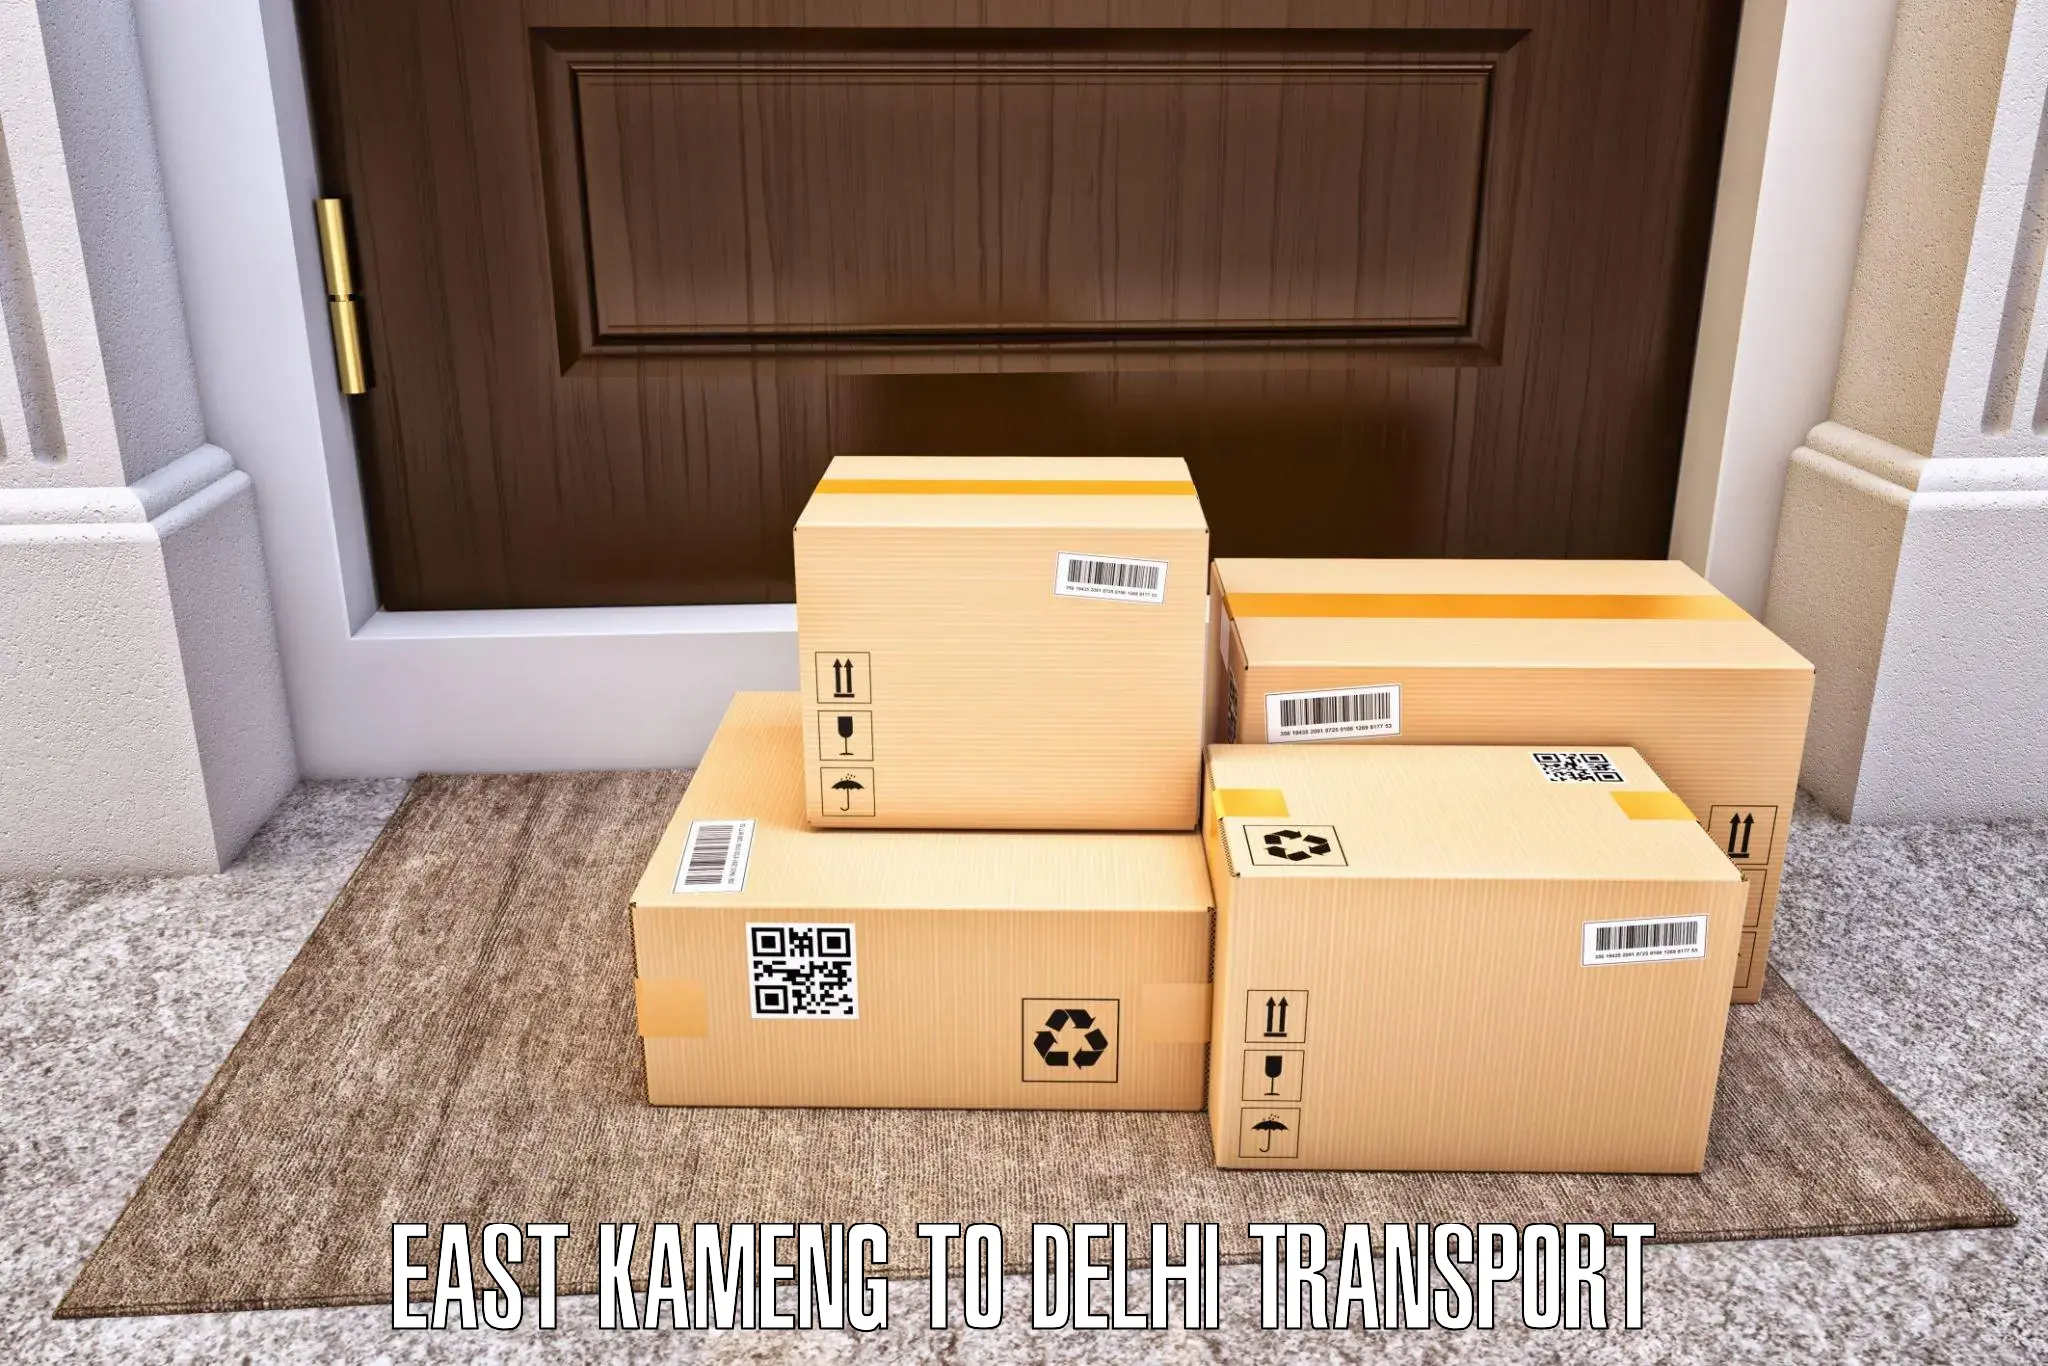 Online transport service East Kameng to East Delhi